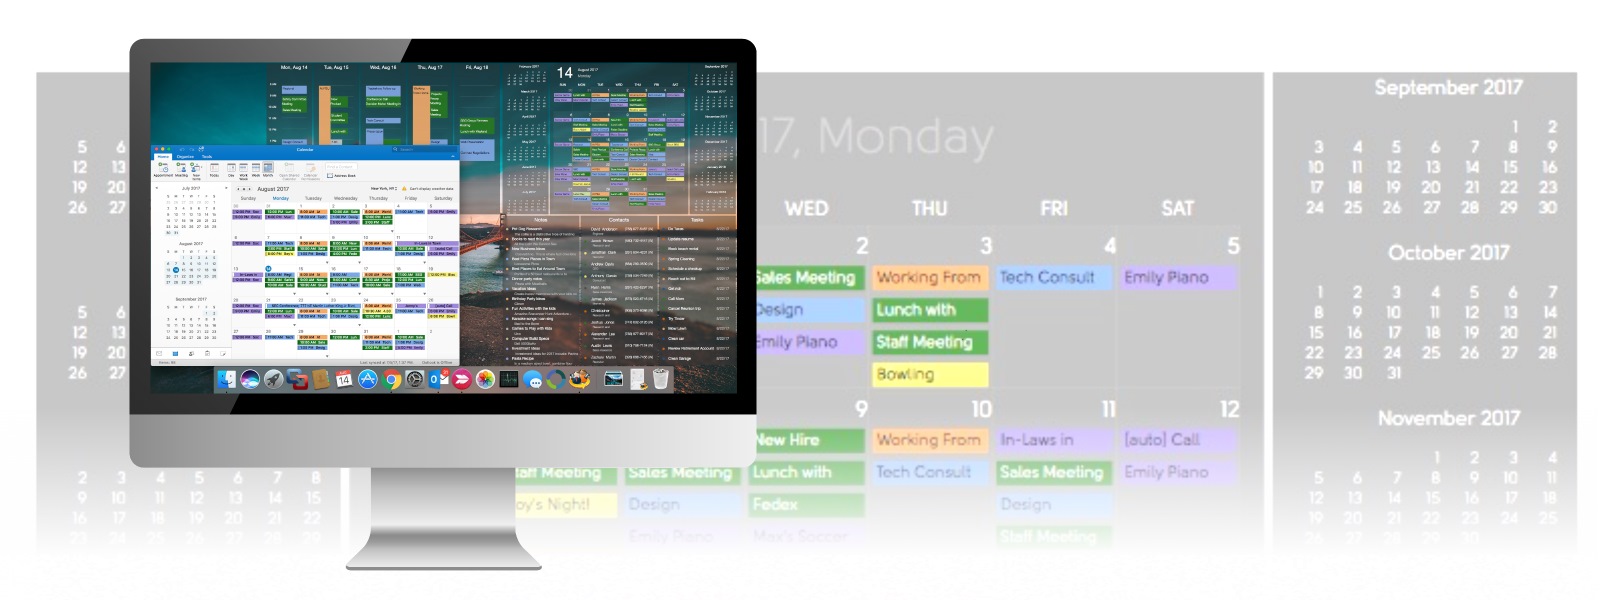 Dejadesktop Wallpaper By Companionlink - Live Calendar Wallpaper For Windows 10 , HD Wallpaper & Backgrounds